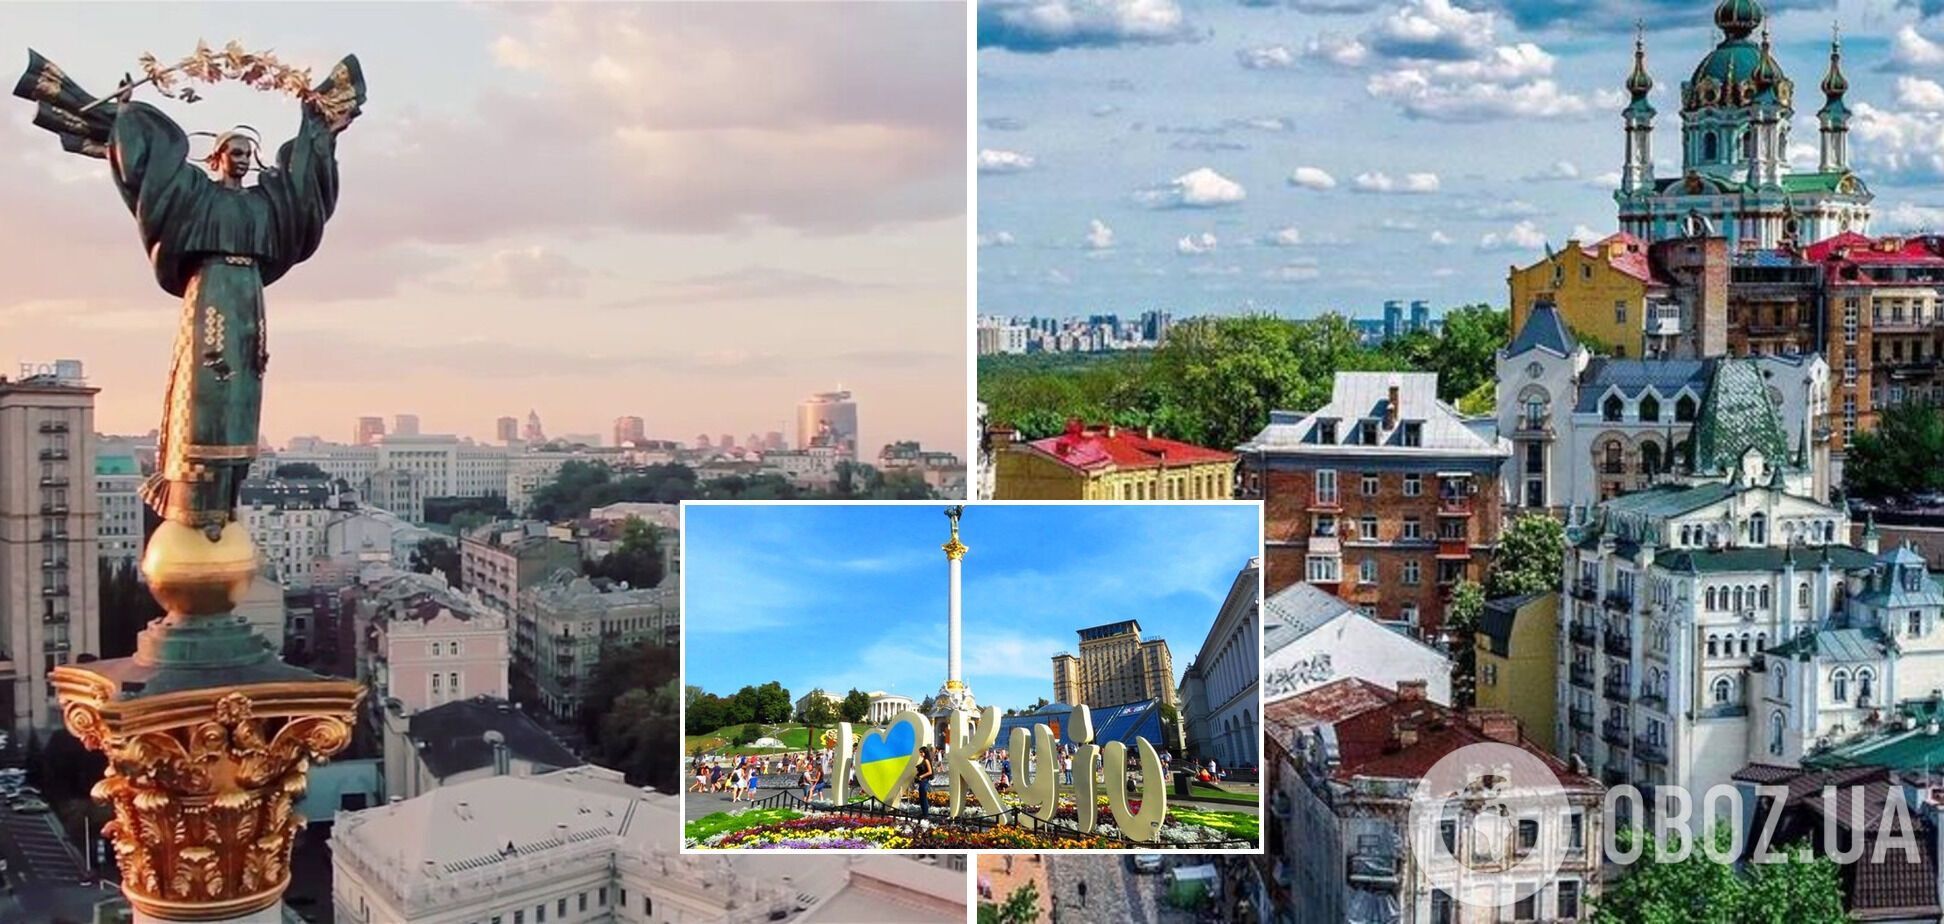 Кличко поздравил киевлян с Днем города и опубликовал впечатляющее видео